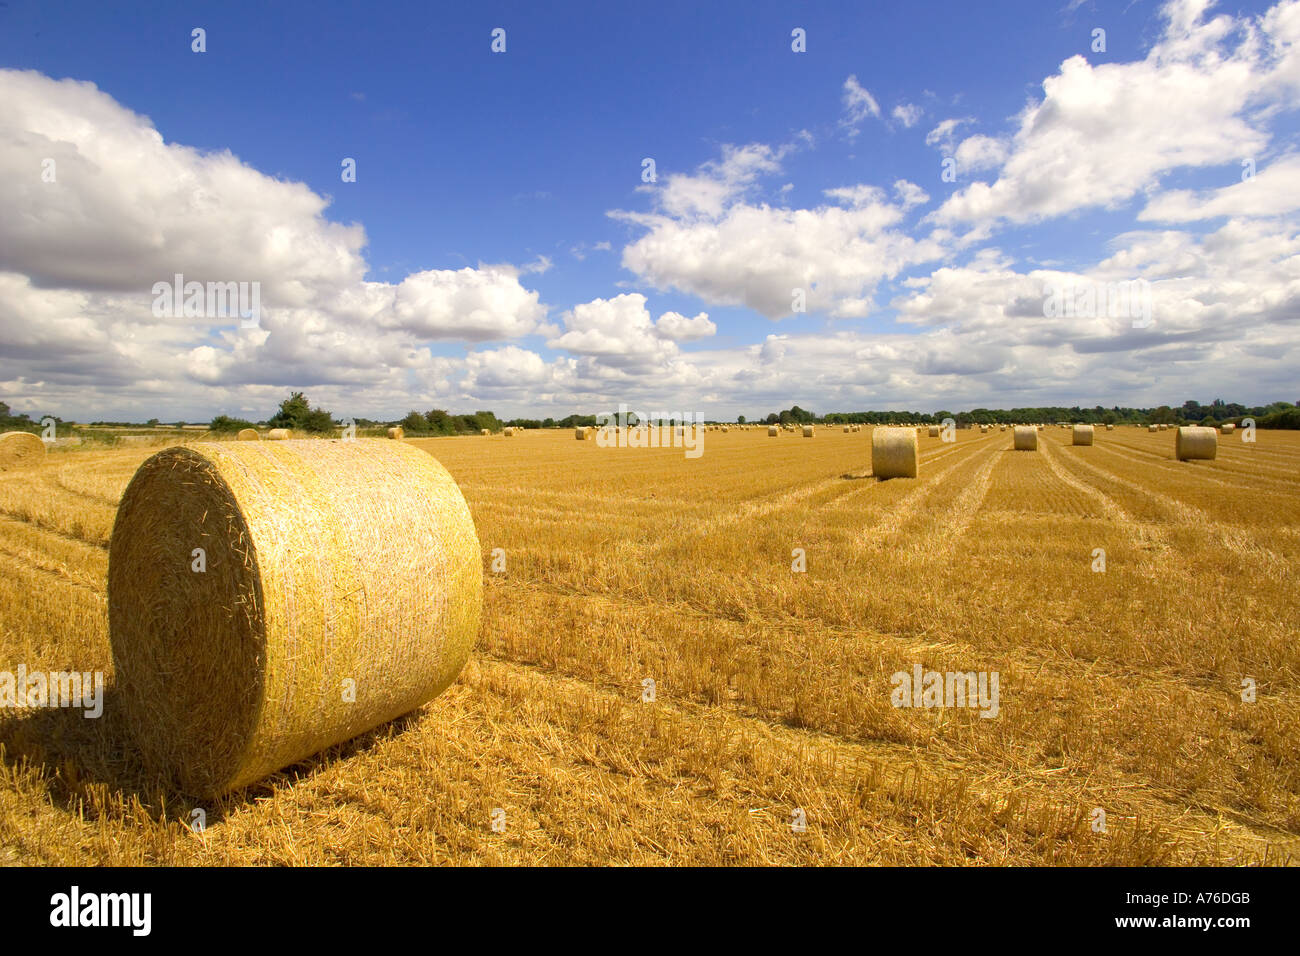 Eine Weitwinkelaufnahme einer typischen englischen Landschaft Sommer Szene von Rundballen Heu im Schnitt Weizenfelder. Stockfoto